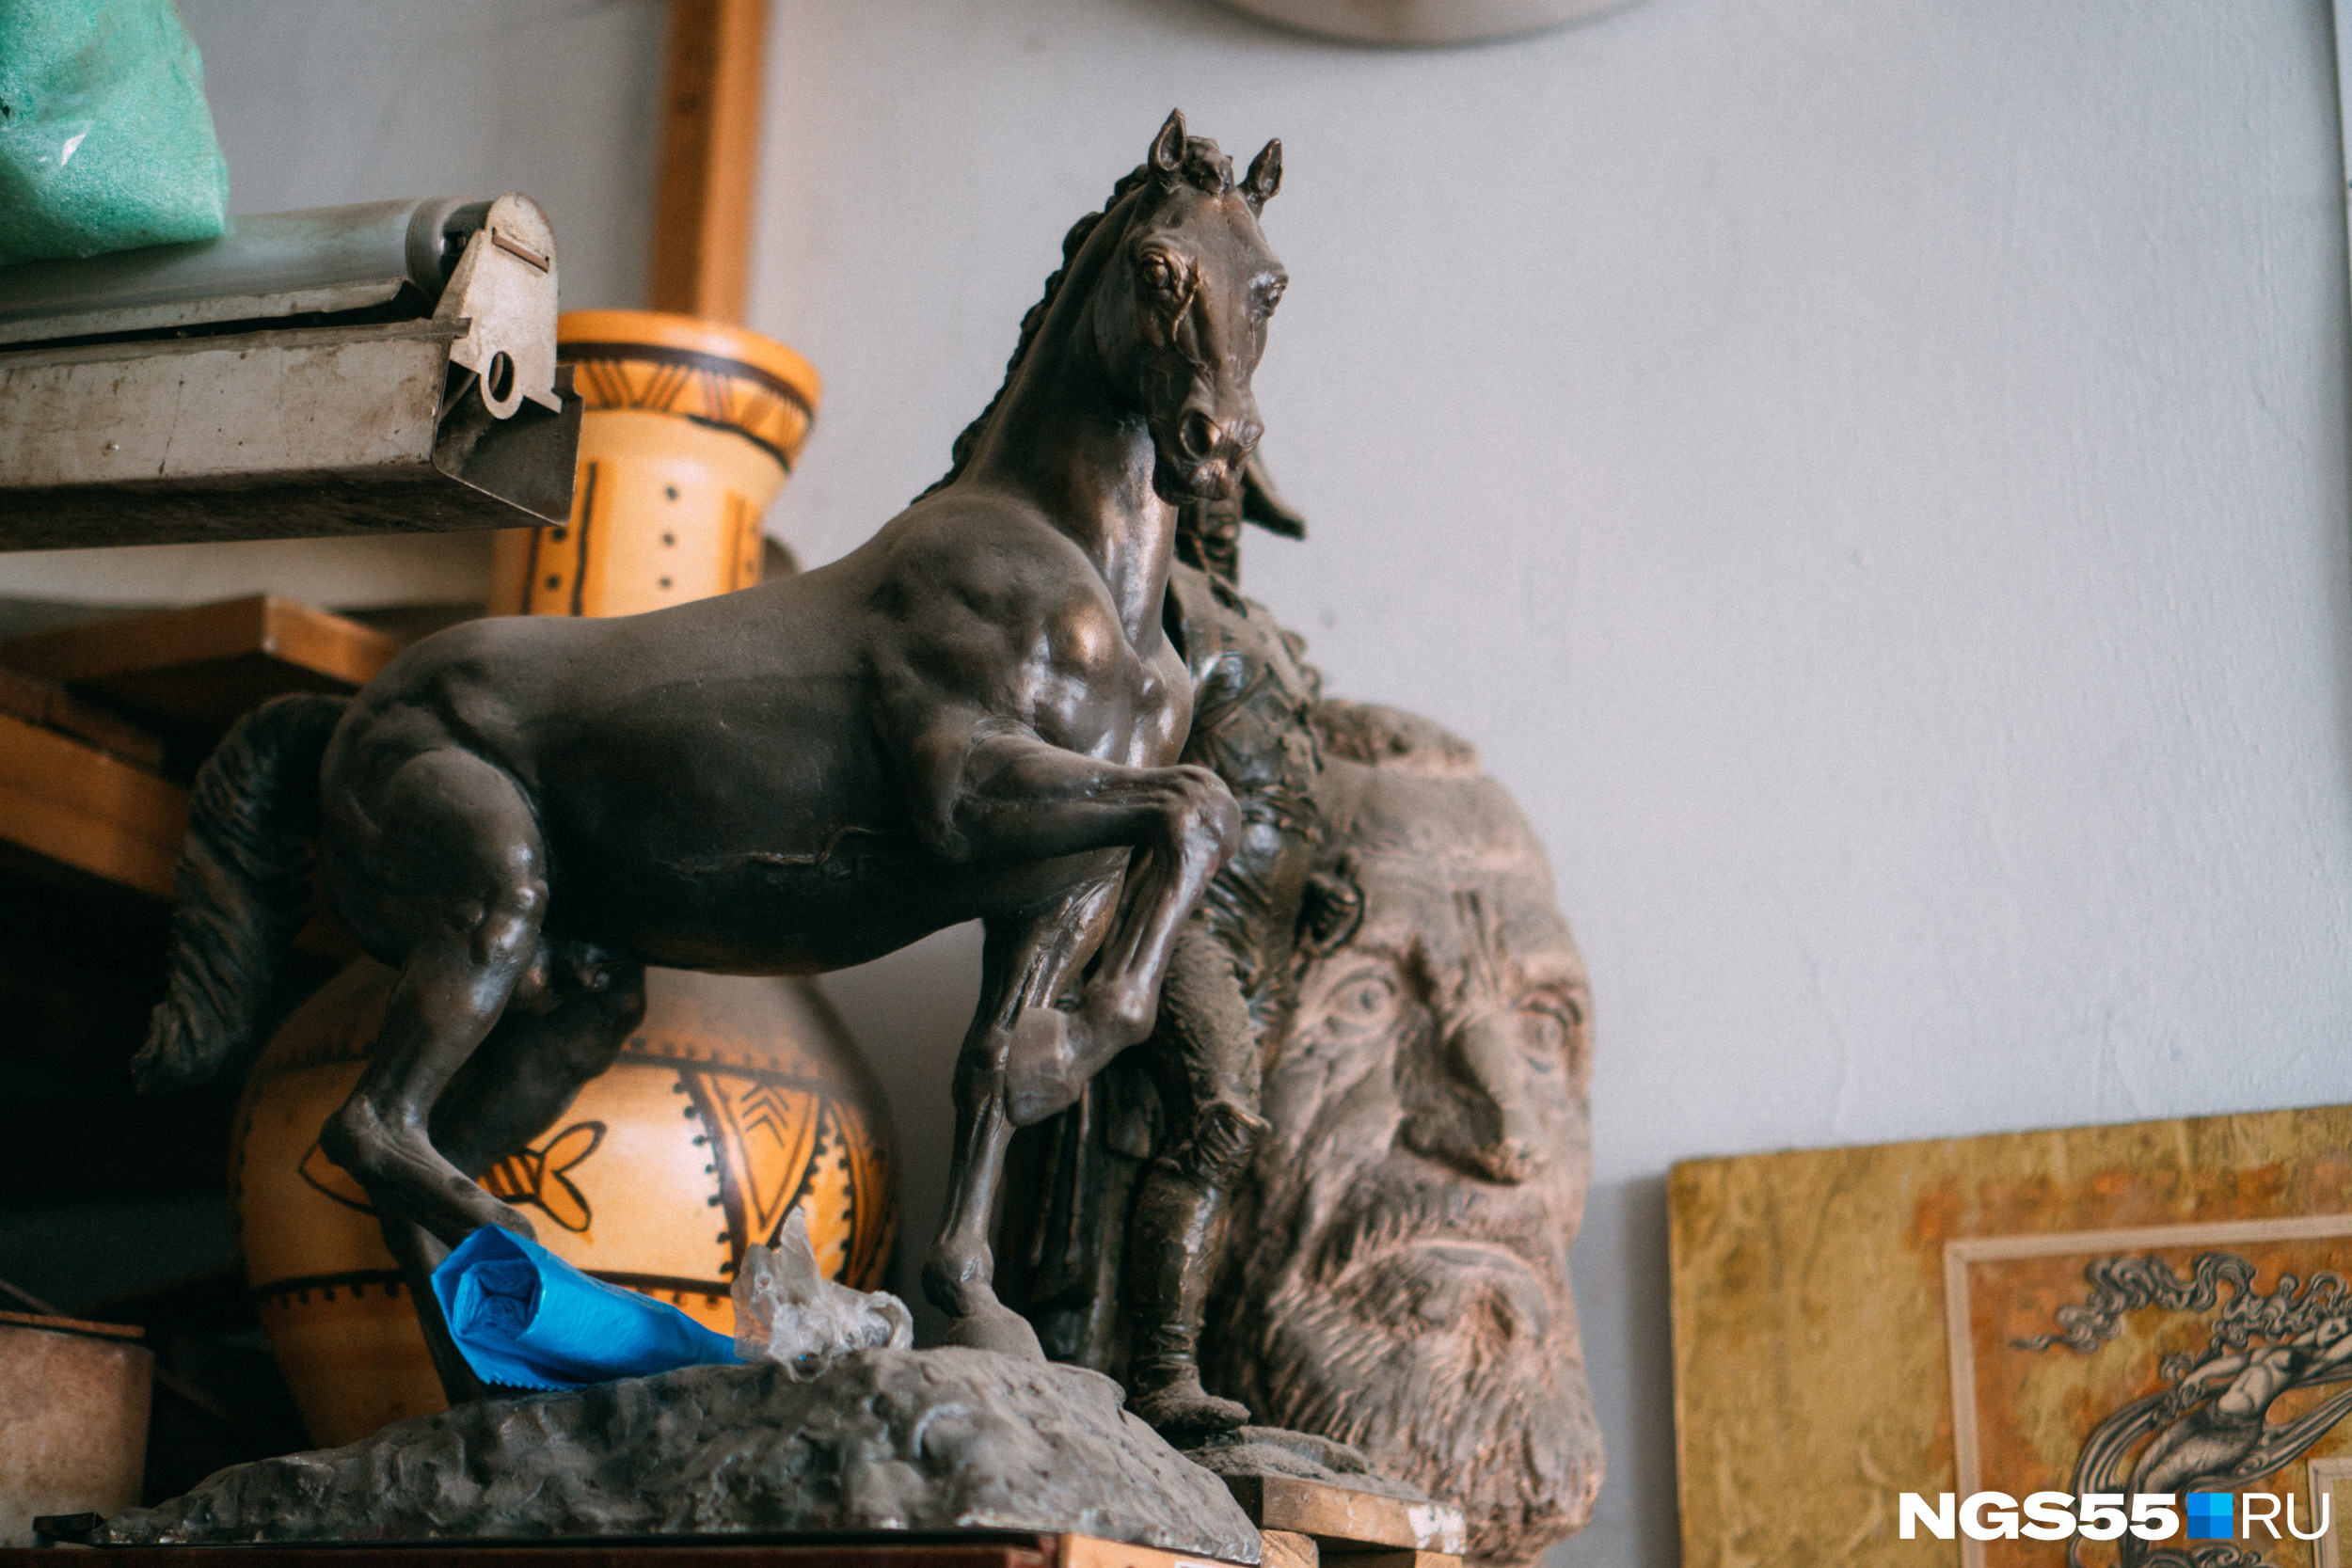 Мечта Сергея Норышева — чтобы в городе поставили скульптуру коня